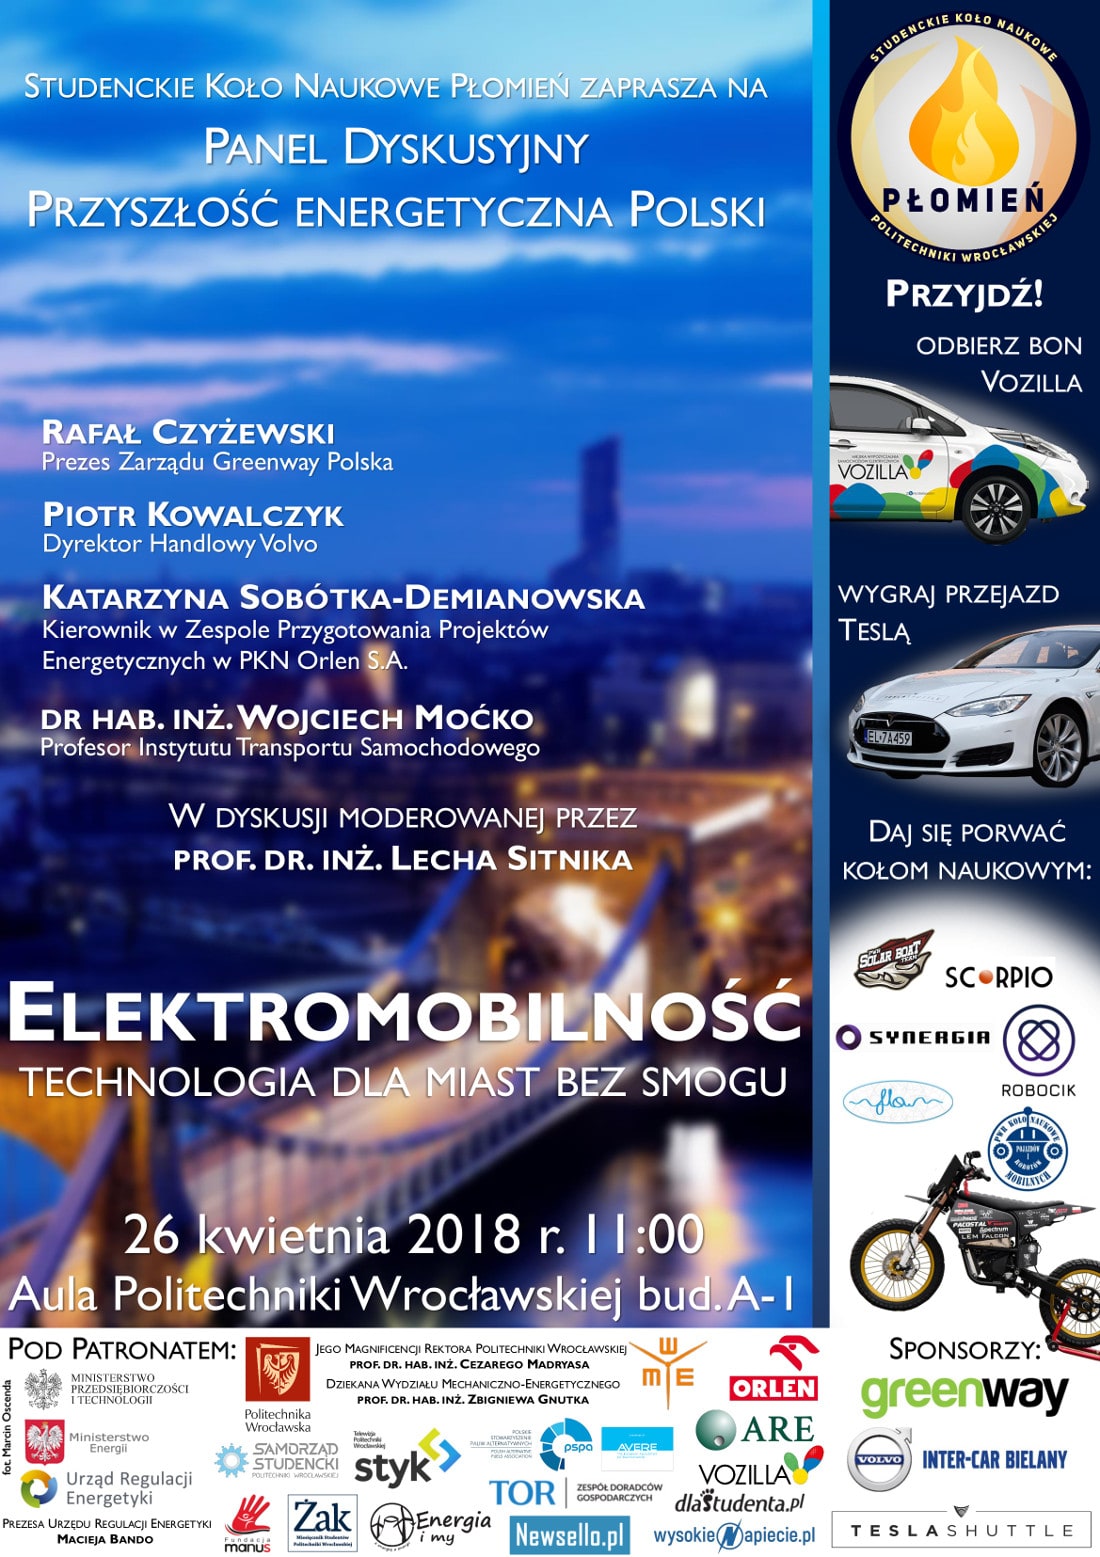 Panel dyskusyjny Przyszłość Energetyczna Polski odbędzie się 26 kwietnia 2018 roku.